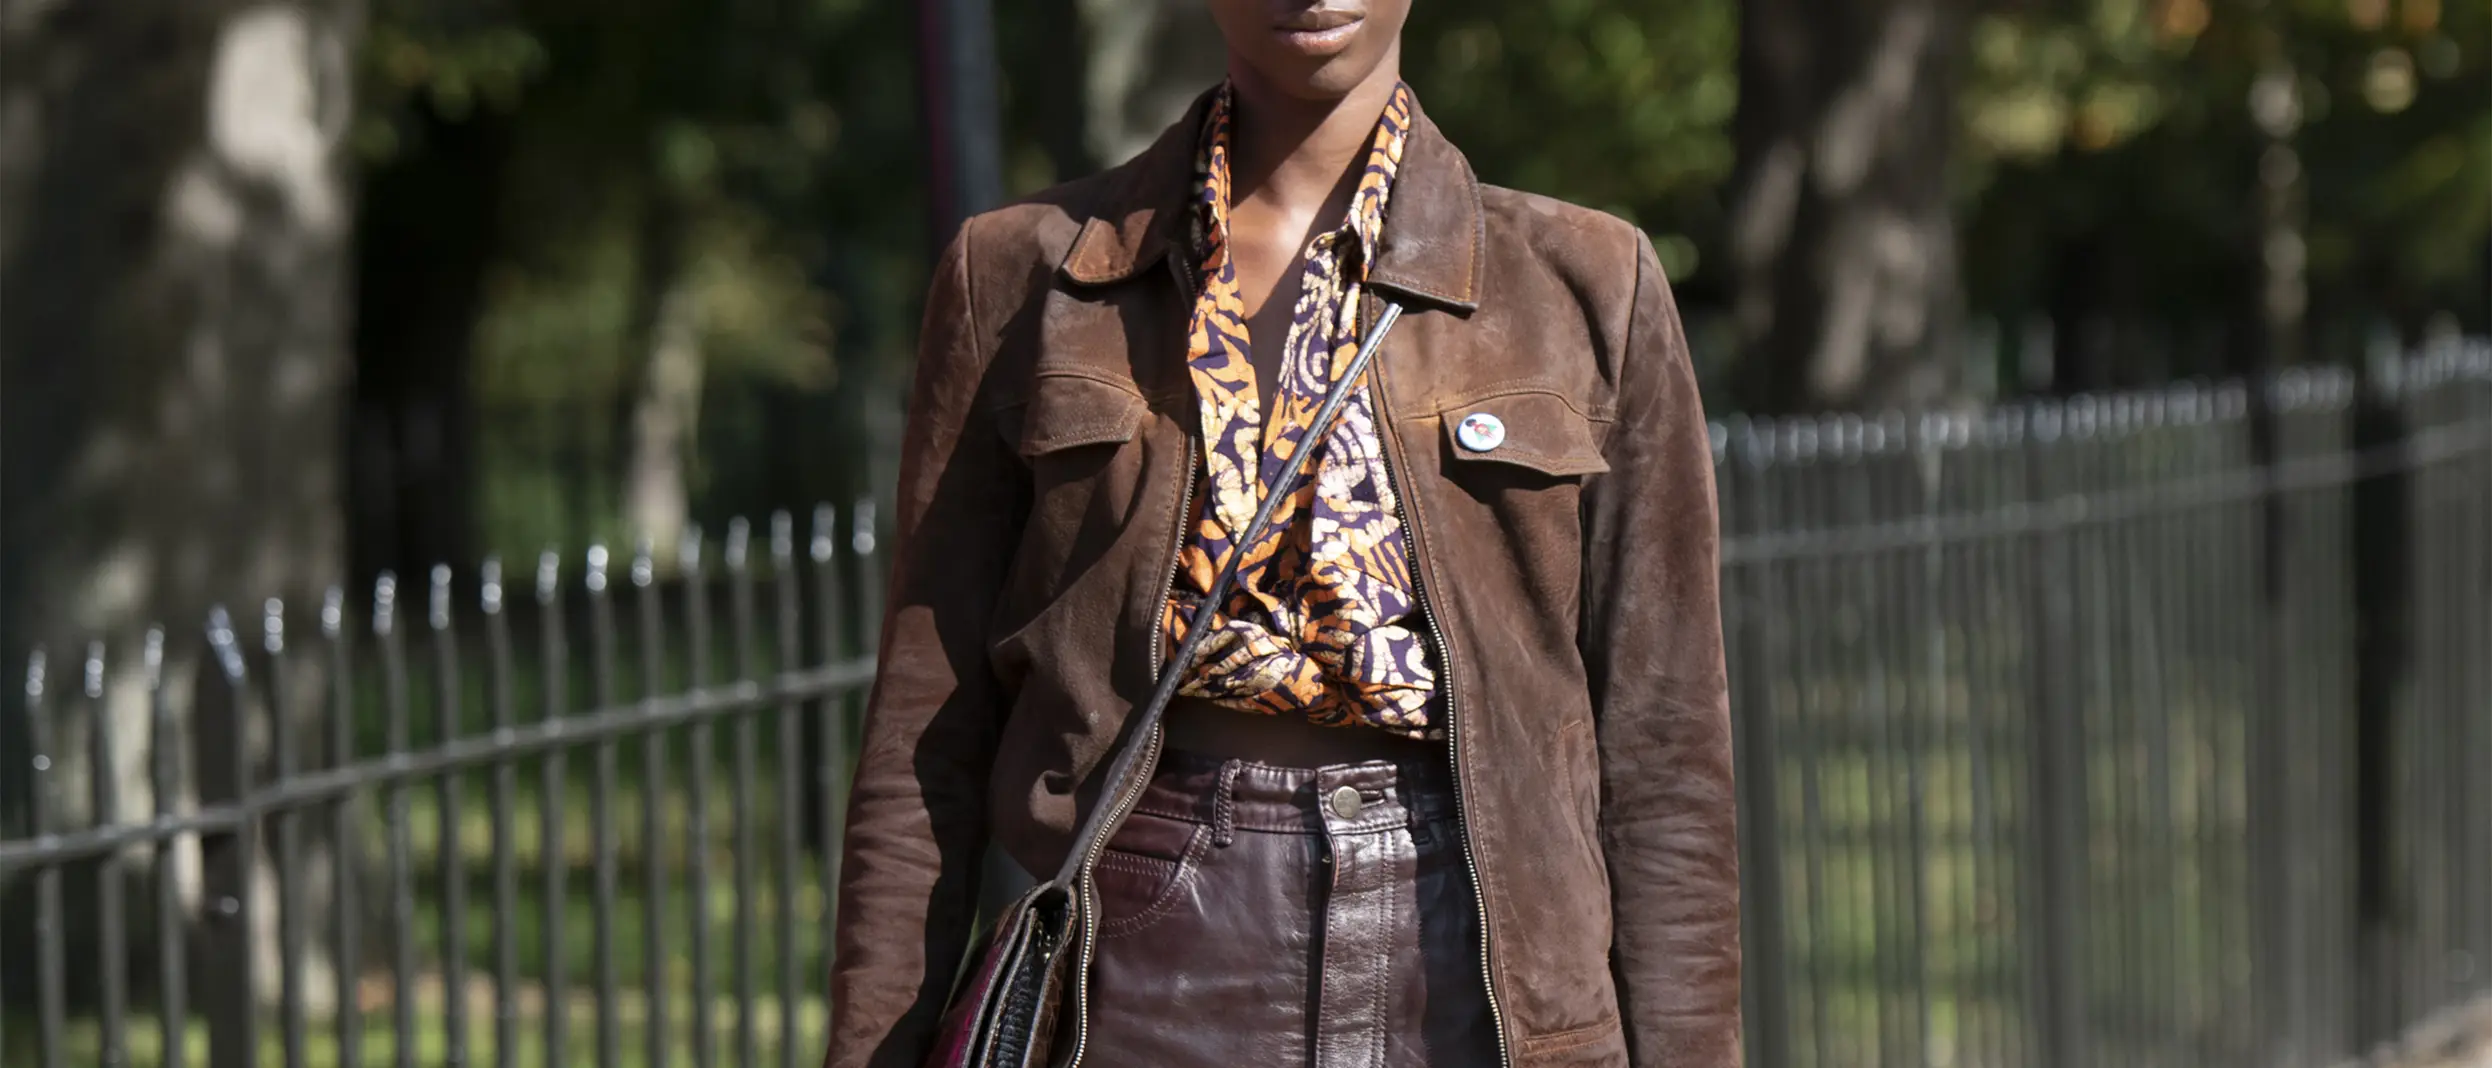 afro-woman-dressed-in-brown.jpg